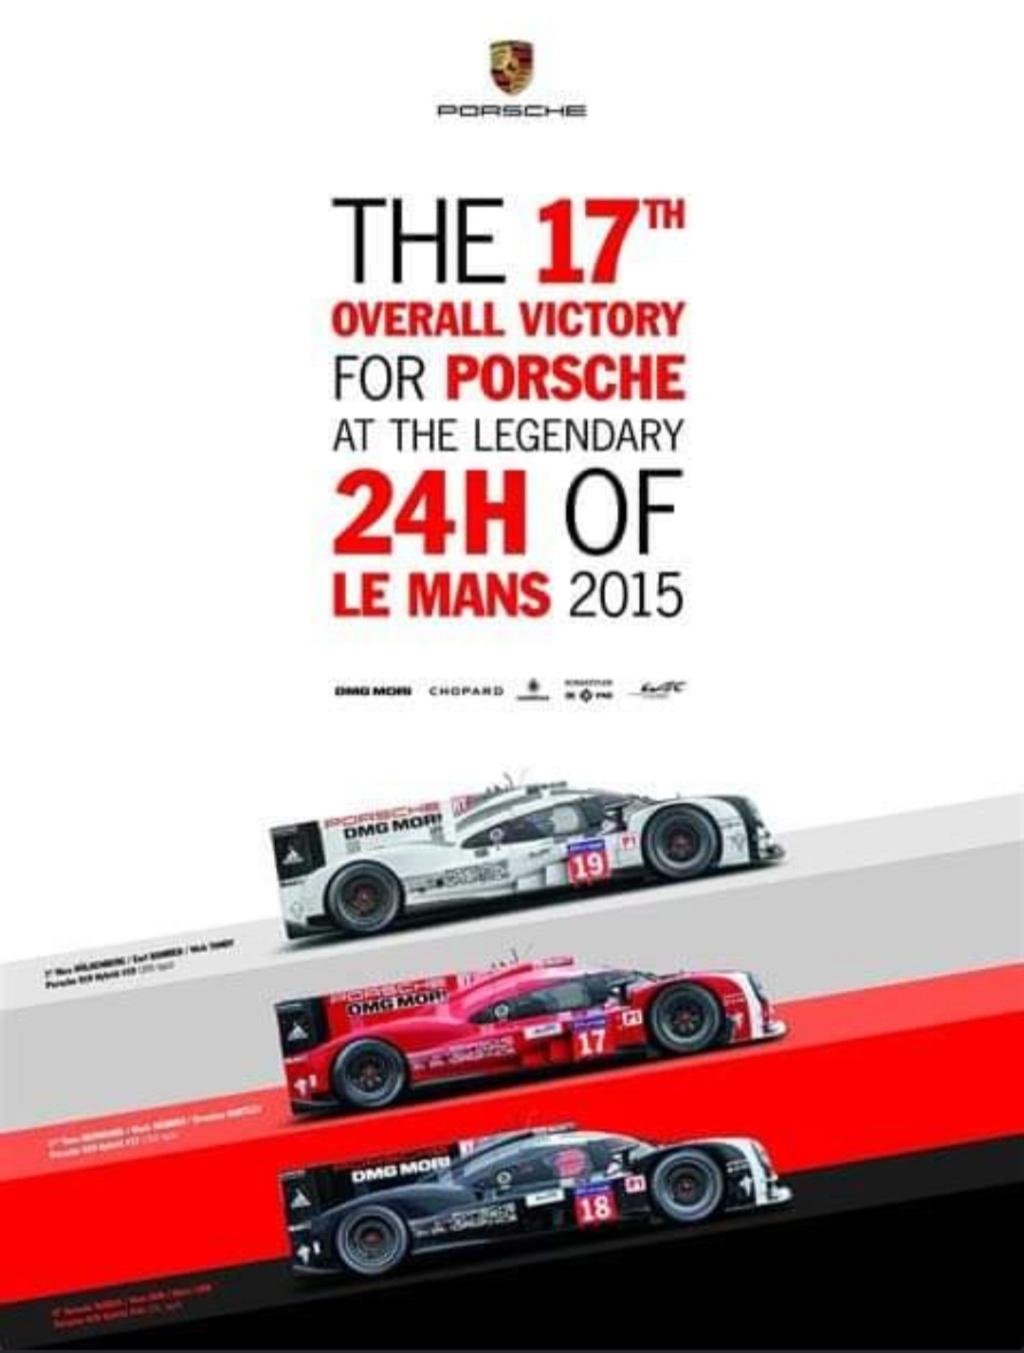 Affiches Porsche dans la course Automobile - Page 2 Img_2122